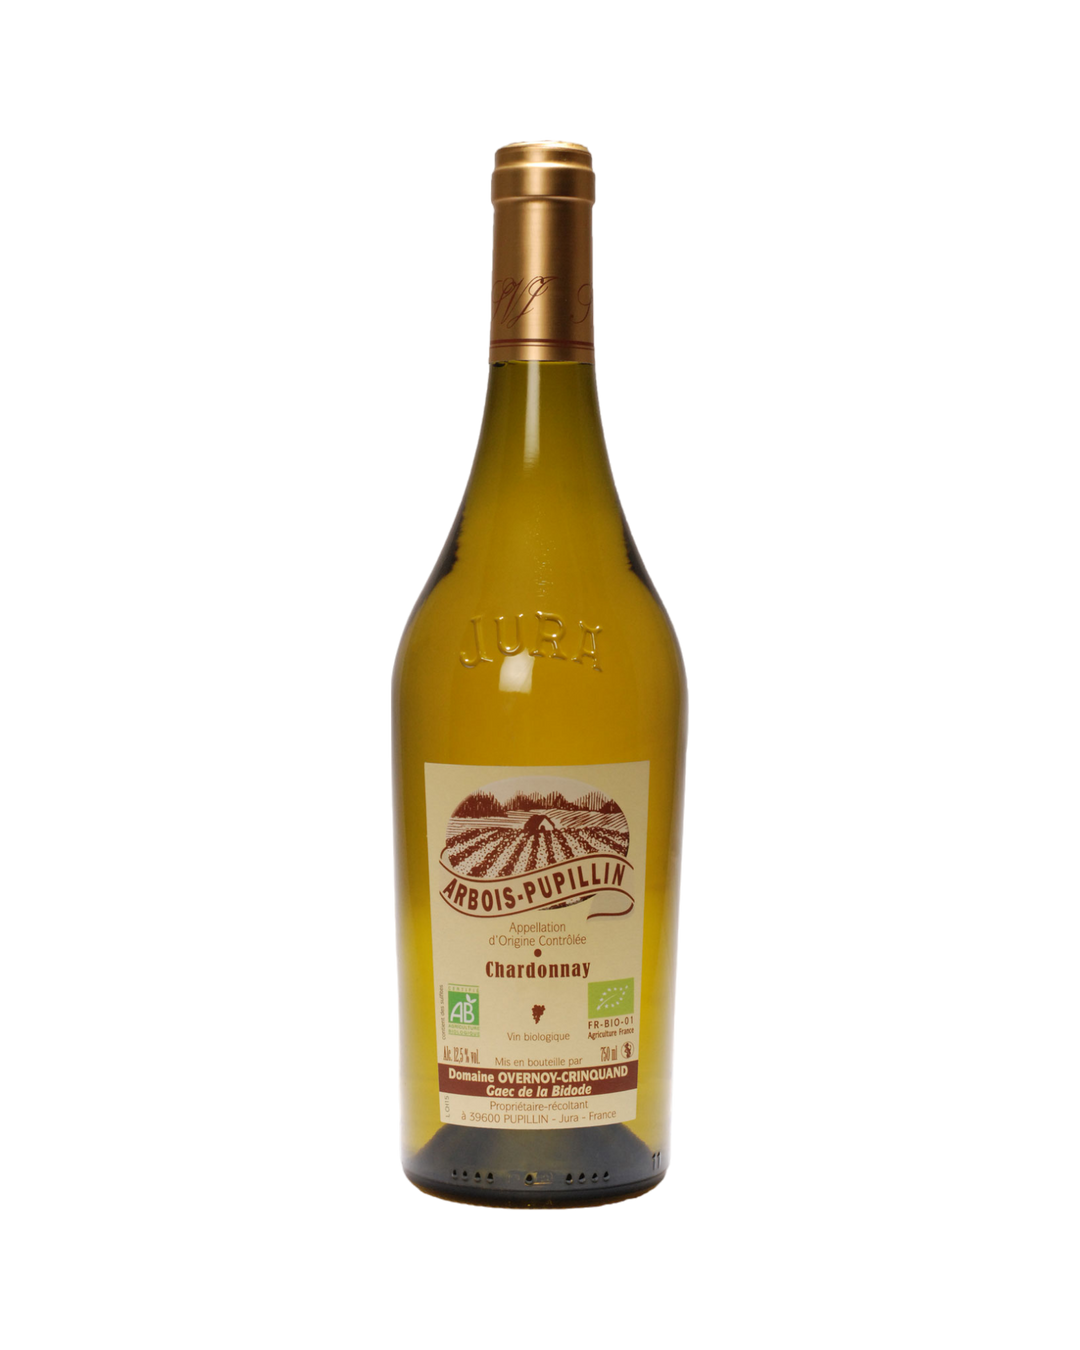 Domaine Overnoy-Crinquand Arbois-Pupillin Chardonnay Vieilles Vignes